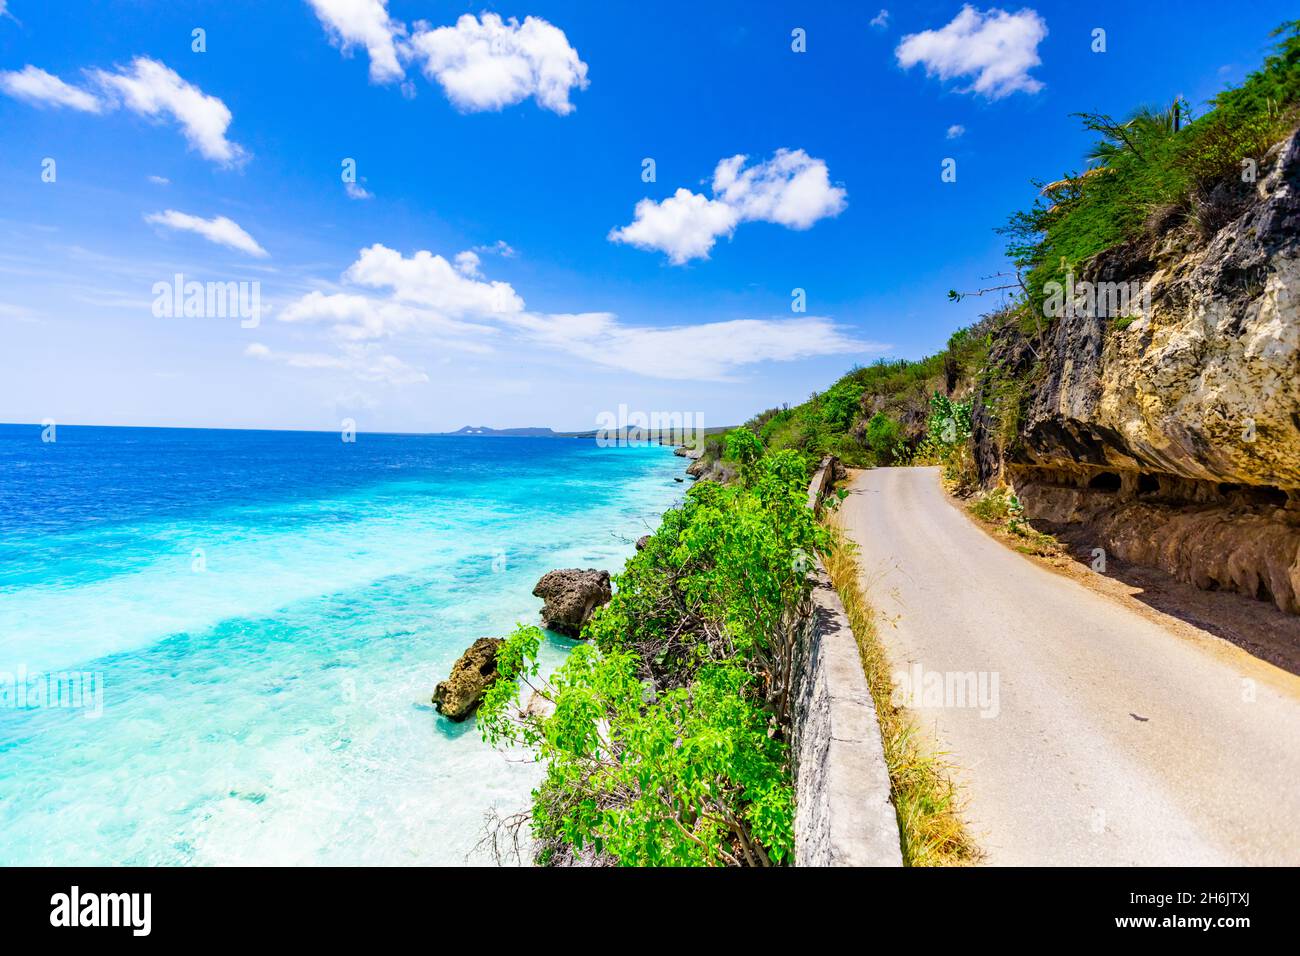 Côté océan bleu cristal en conduisant le long de la route sur Bonaire, Antilles néerlandaises, Caraïbes, Amérique centrale Banque D'Images